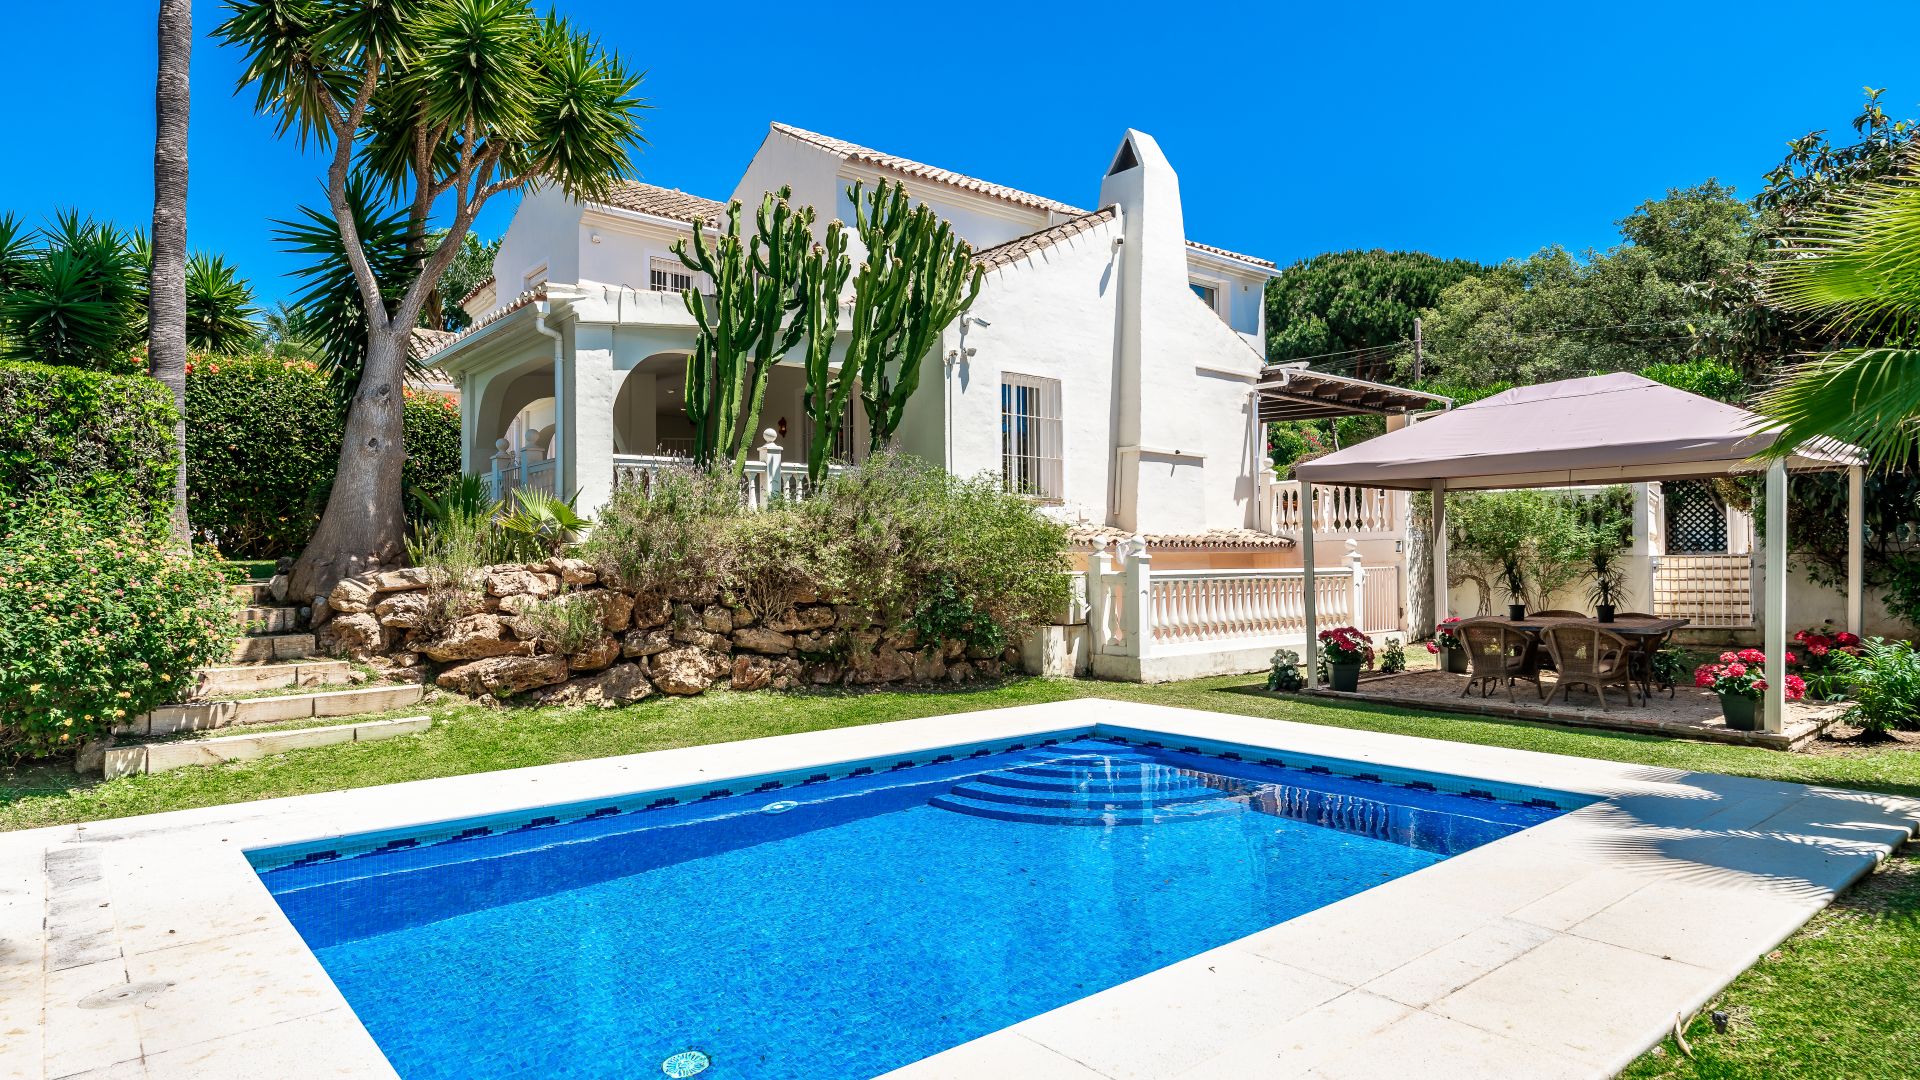 Family villa in highly demanded area | Engel & Völkers Marbella